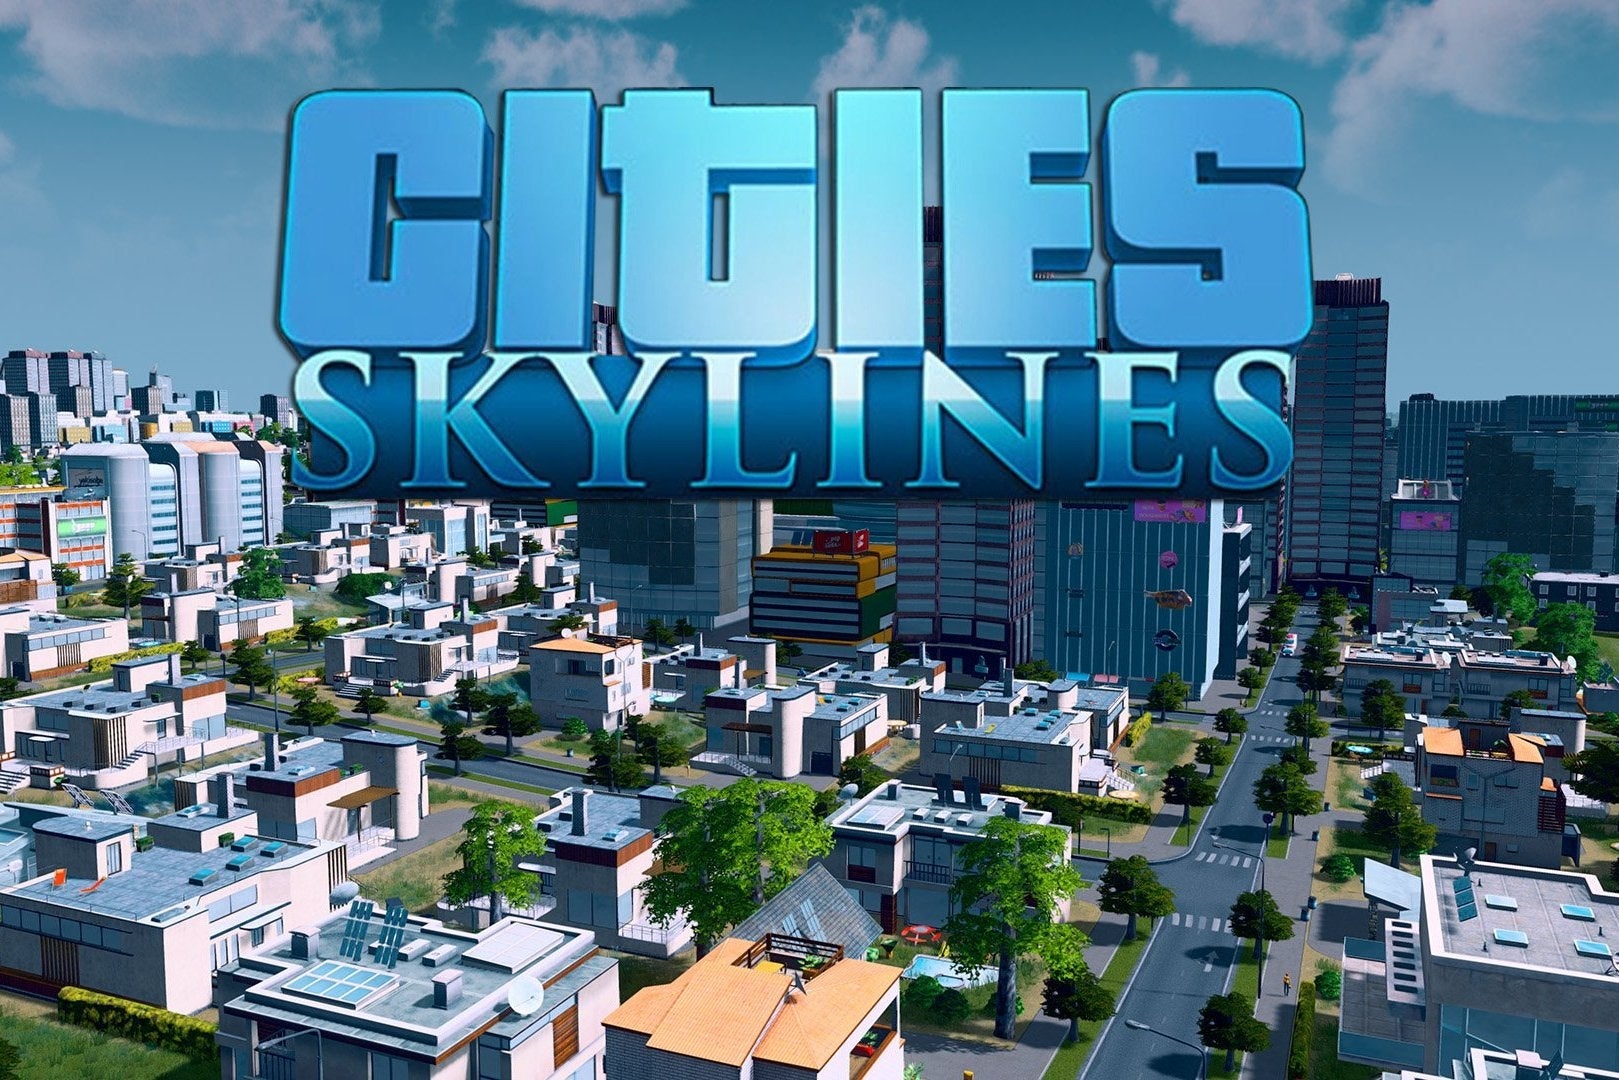 Bilder zu Cities: Skylines - die besten Mods und Cheats